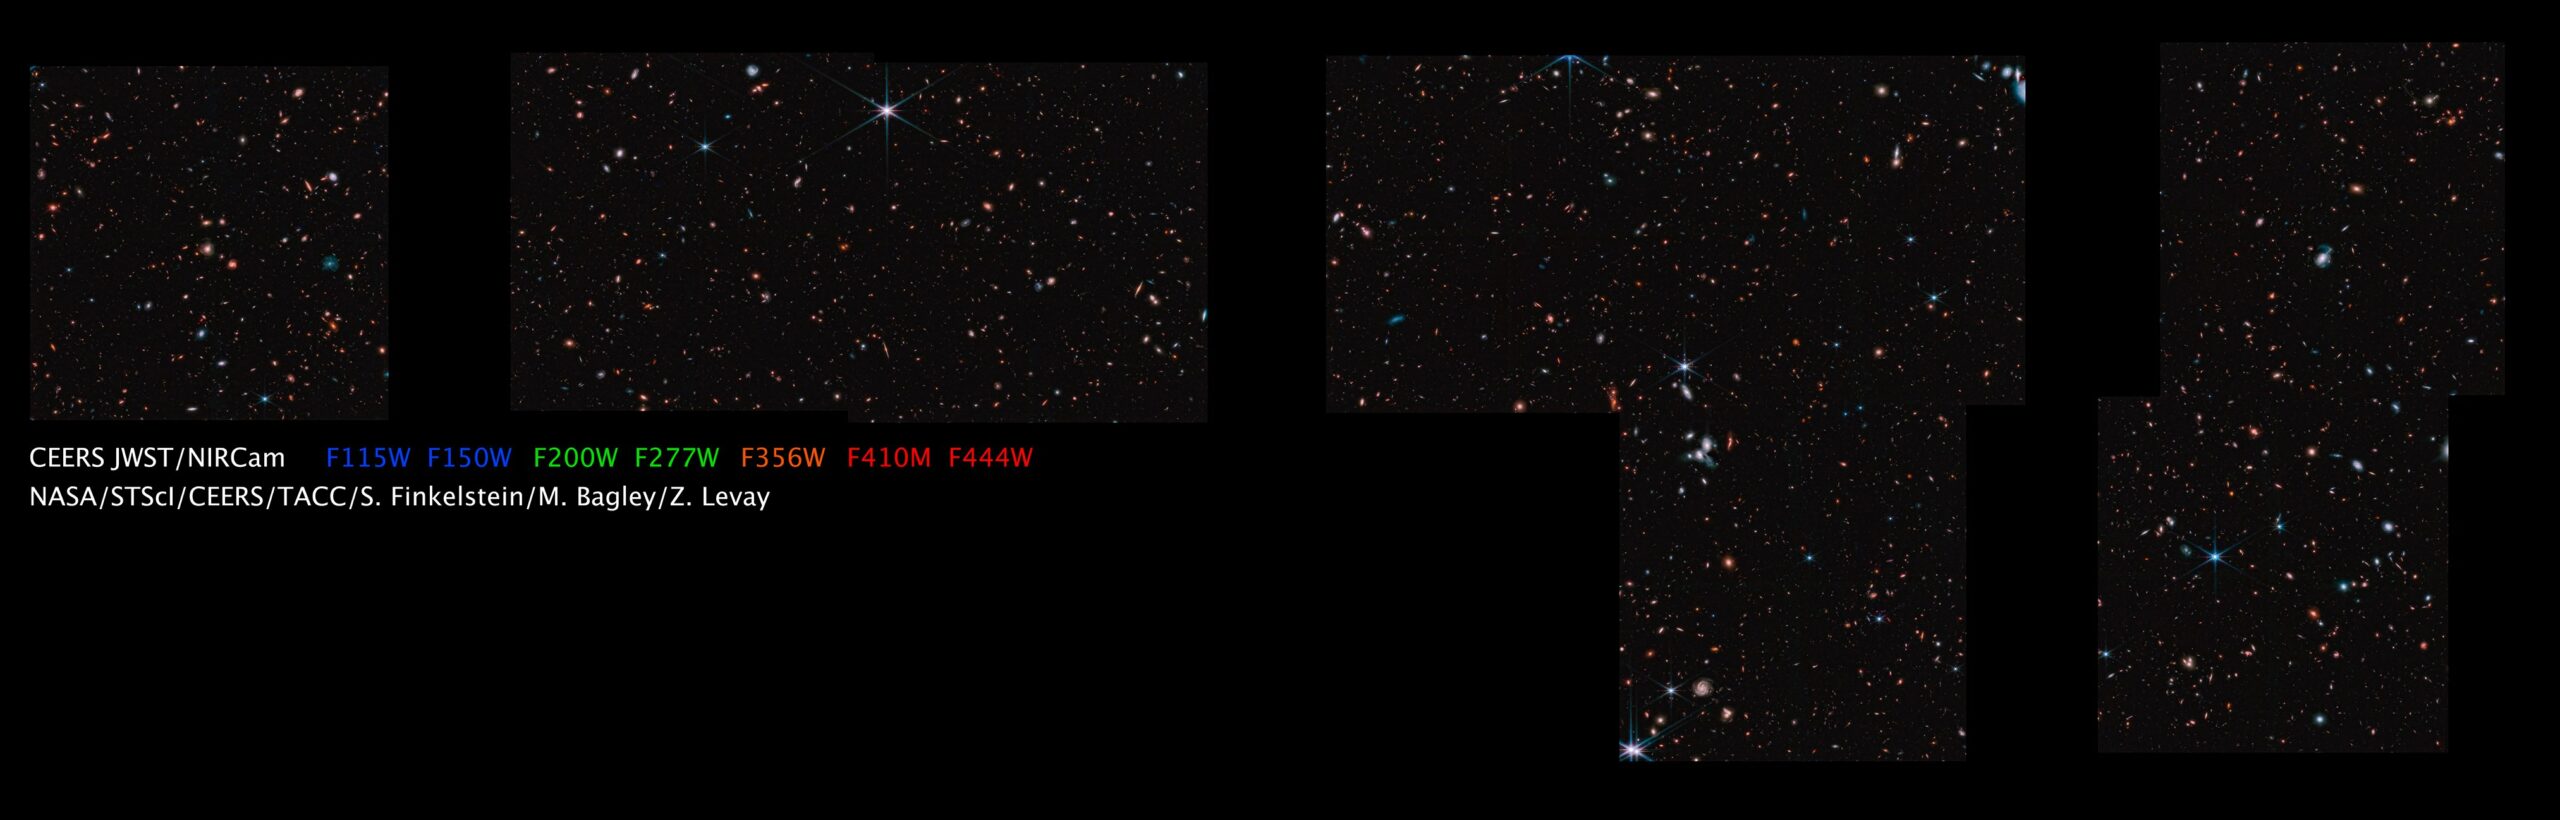 Mosaico de 690 fotos de James Webb é a maior pesquisa de galáxias já feita